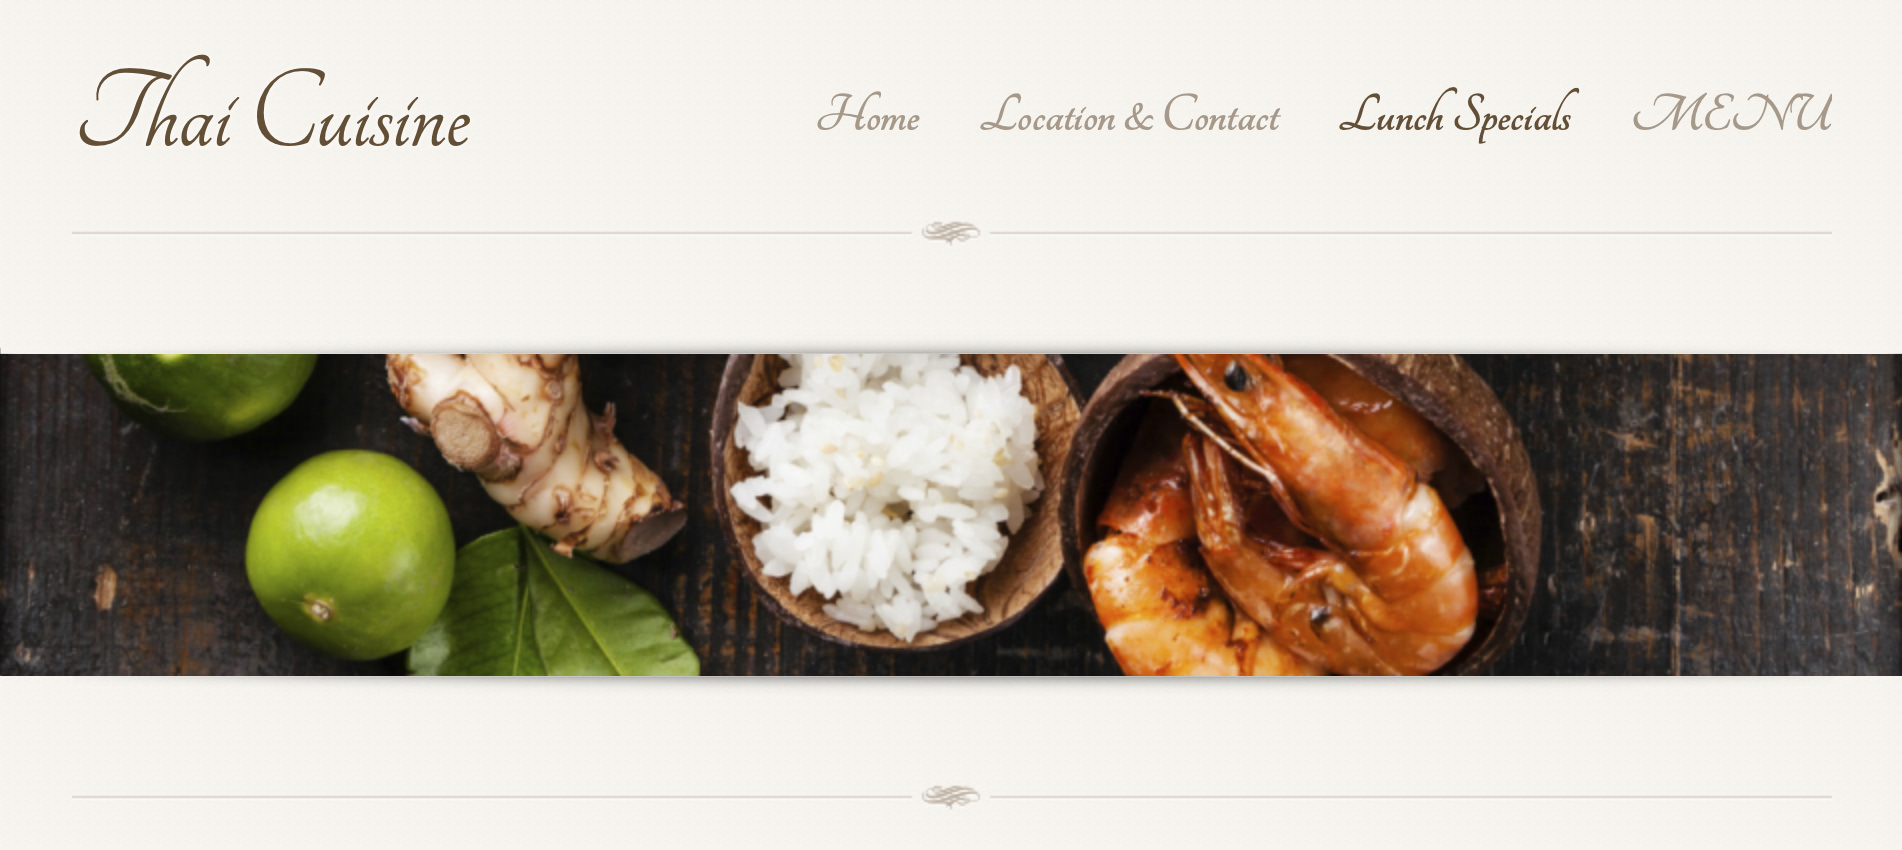 The Thai Cuisine restaurant website.